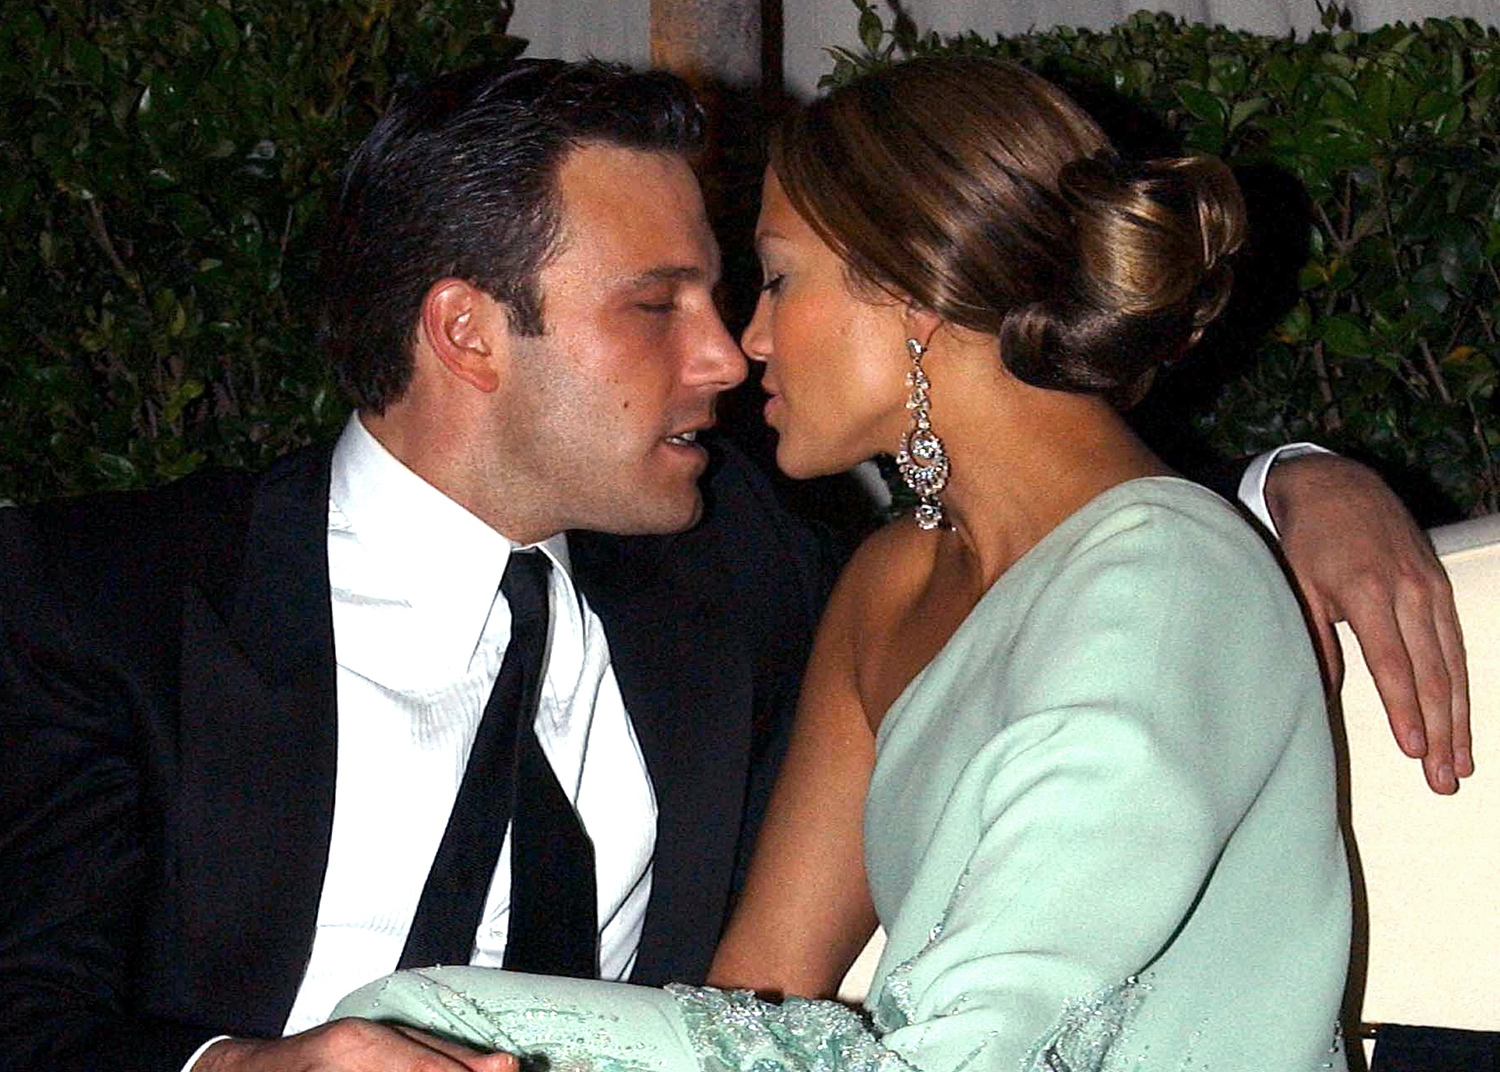 Ben Affleck and Jennifer Lopez canoodling in 2003 Bennifer